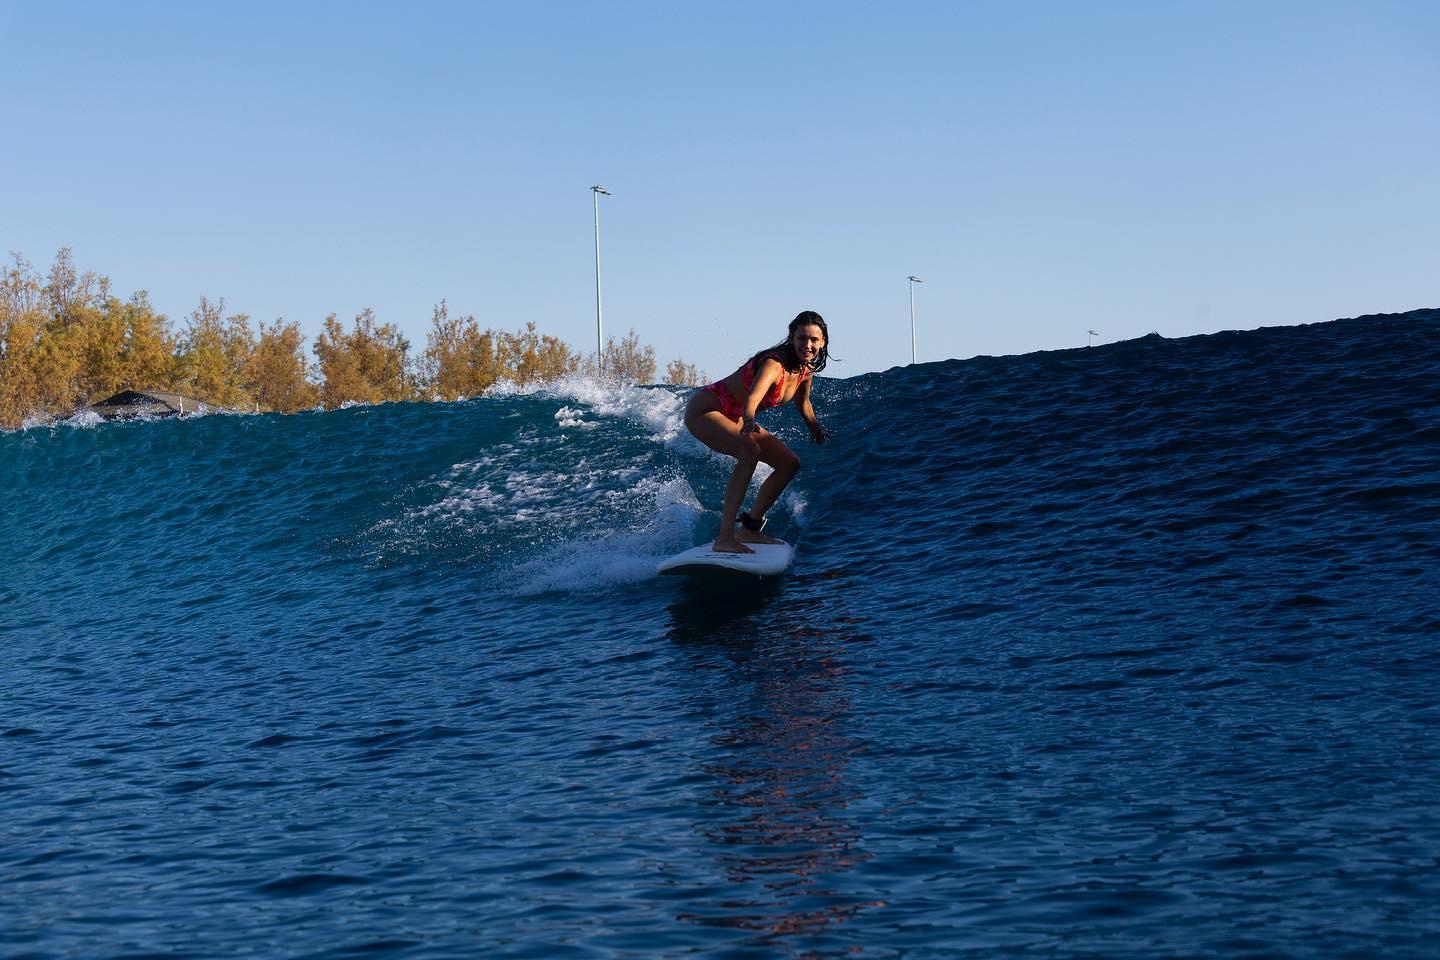 Nina Dobrev goes surfing